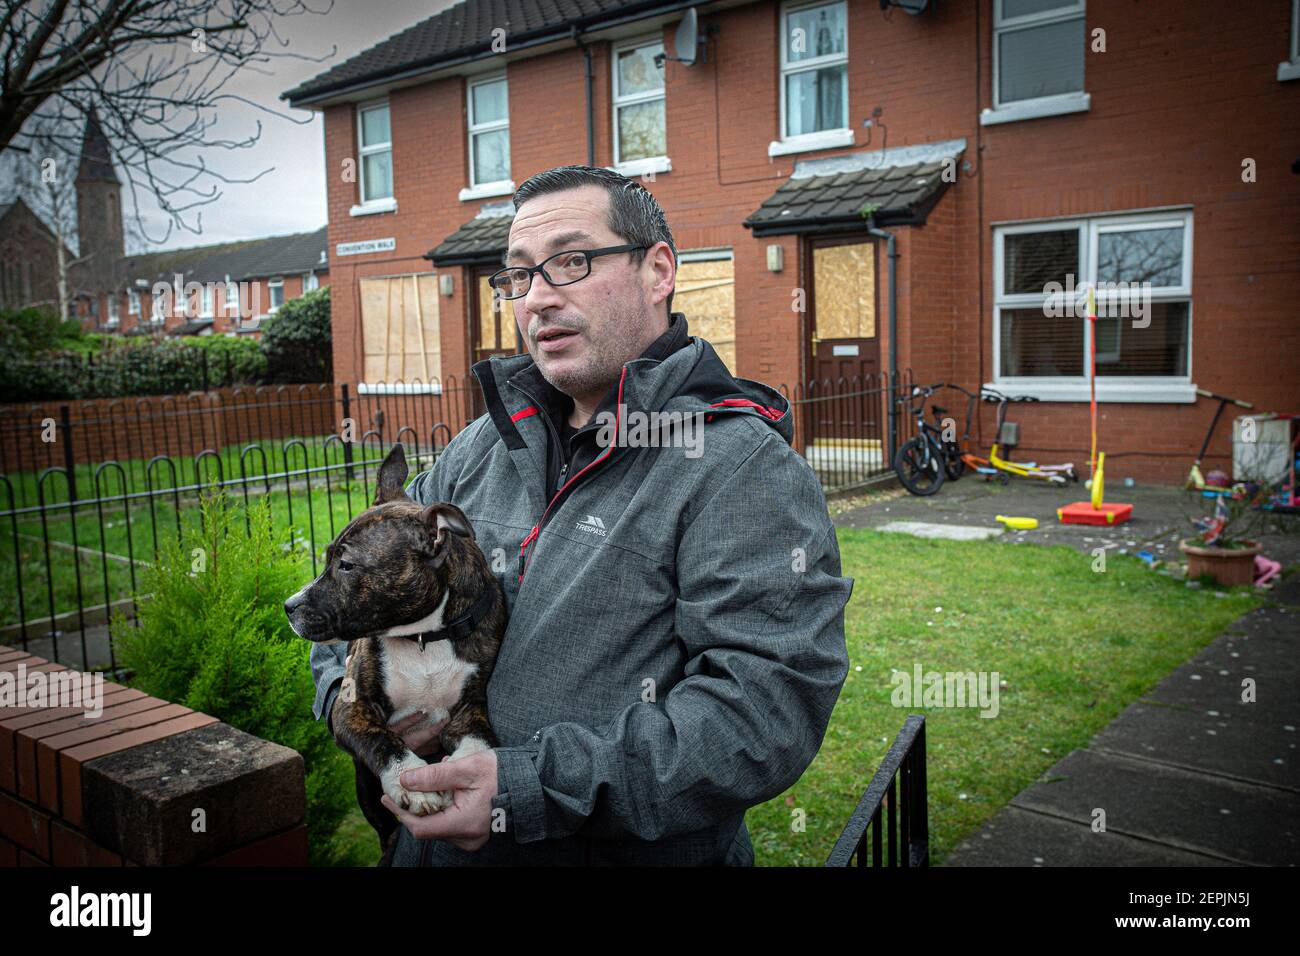 EAST BELFAST, IRLANDE DU NORD - février 24 : l'homme parle de dommages criminels causés à la maison de ses voisins . Banque D'Images